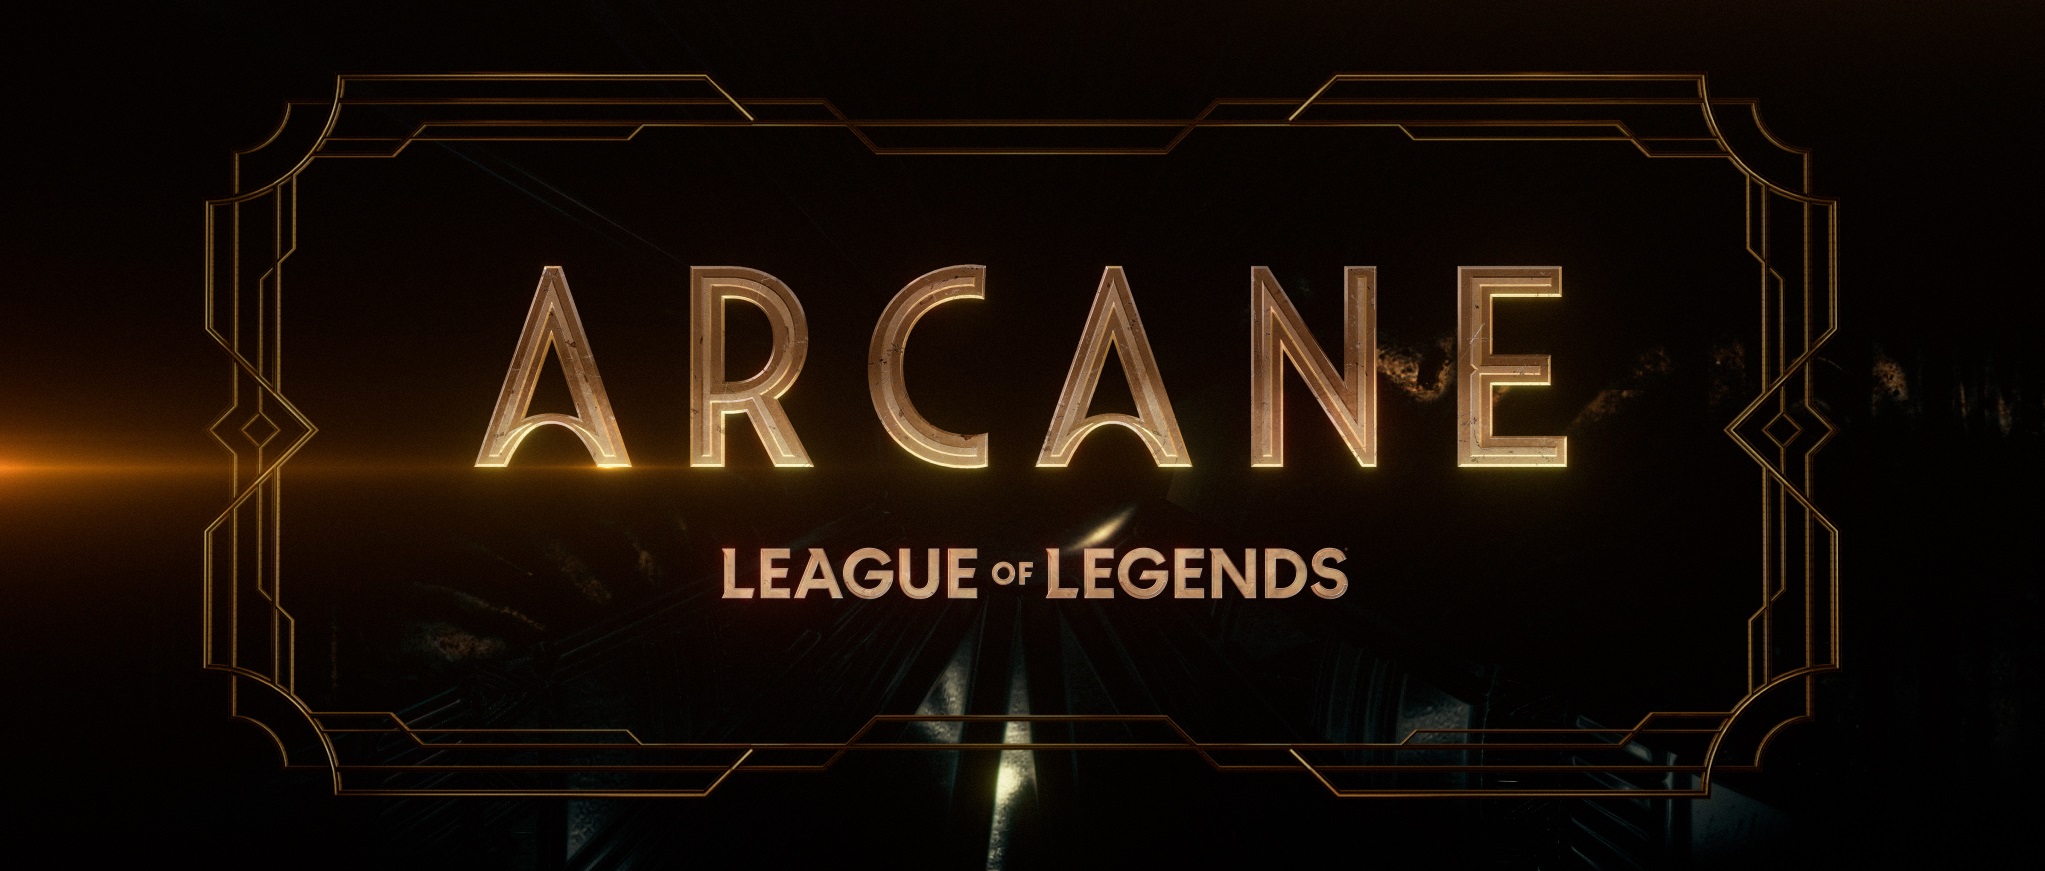 A imagem é o poster promocional da série. Nele encontramos um fundo preto. Centralizado, podemos ler “Arcane” e “League of Legends” logo abaixo, ambas em letras douradas. Uma borda dourada está ao redor das palavras, também centralizada.